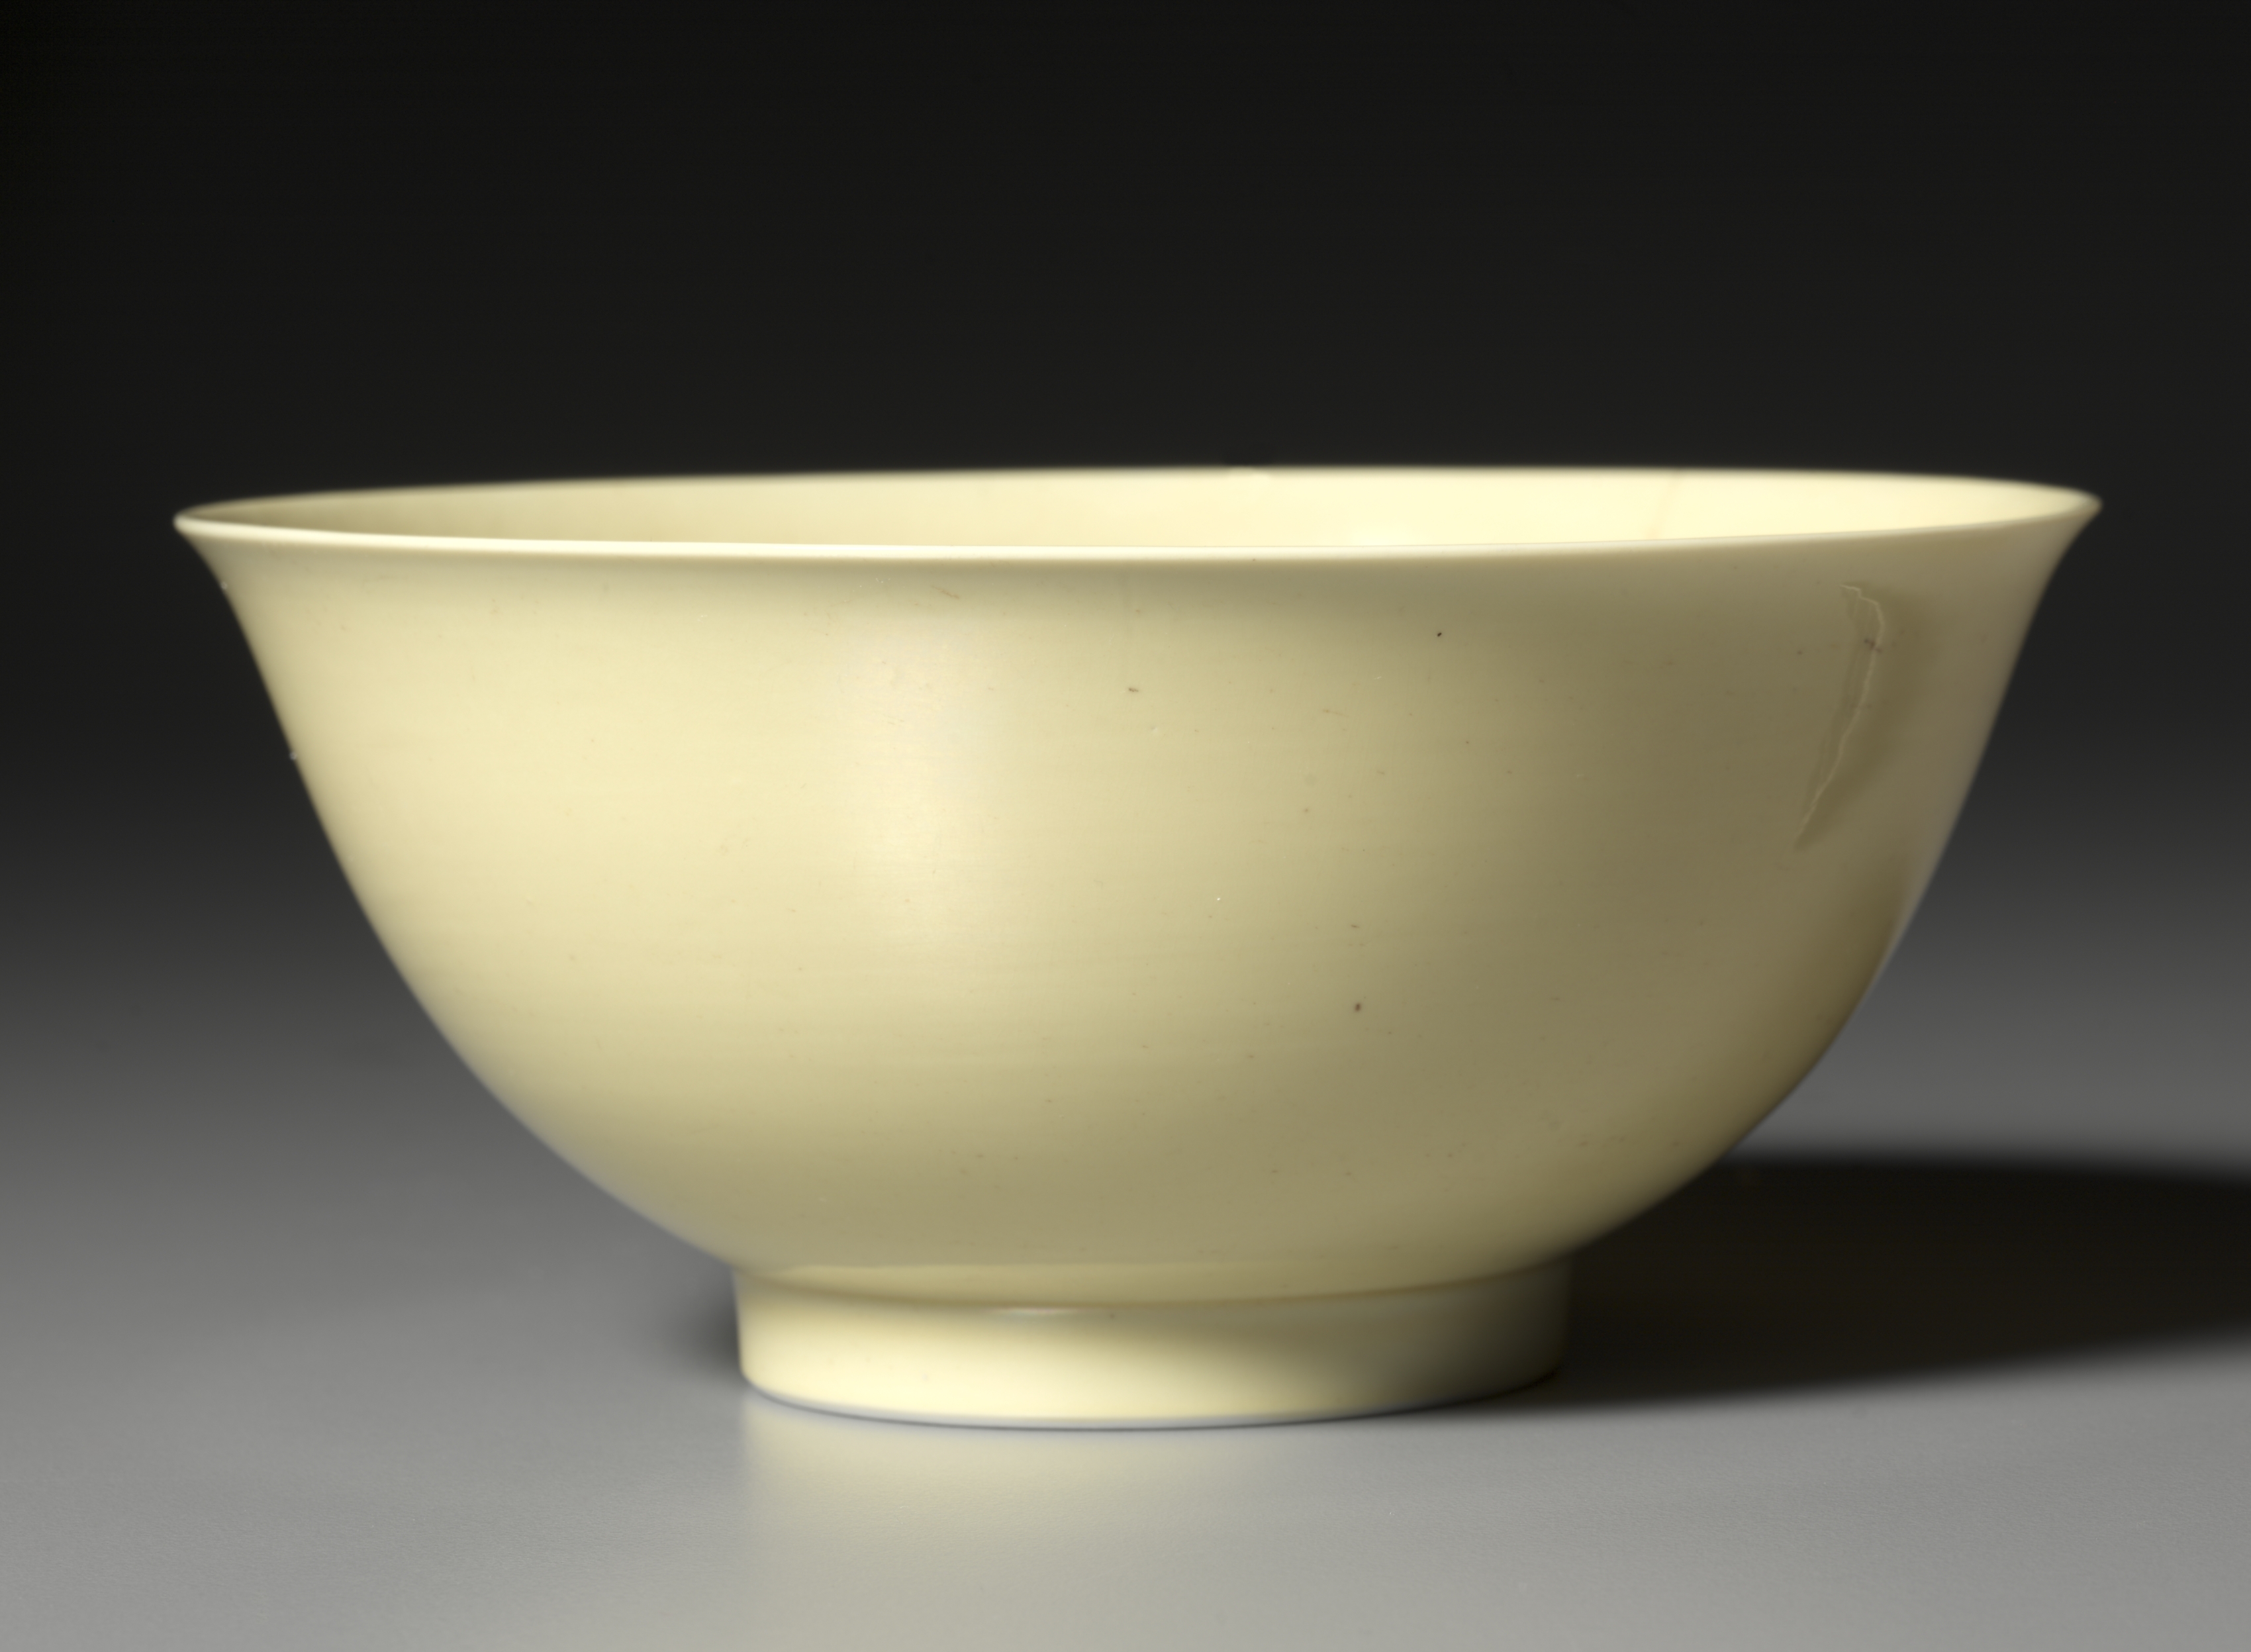 Bowl with Yellow Glaze